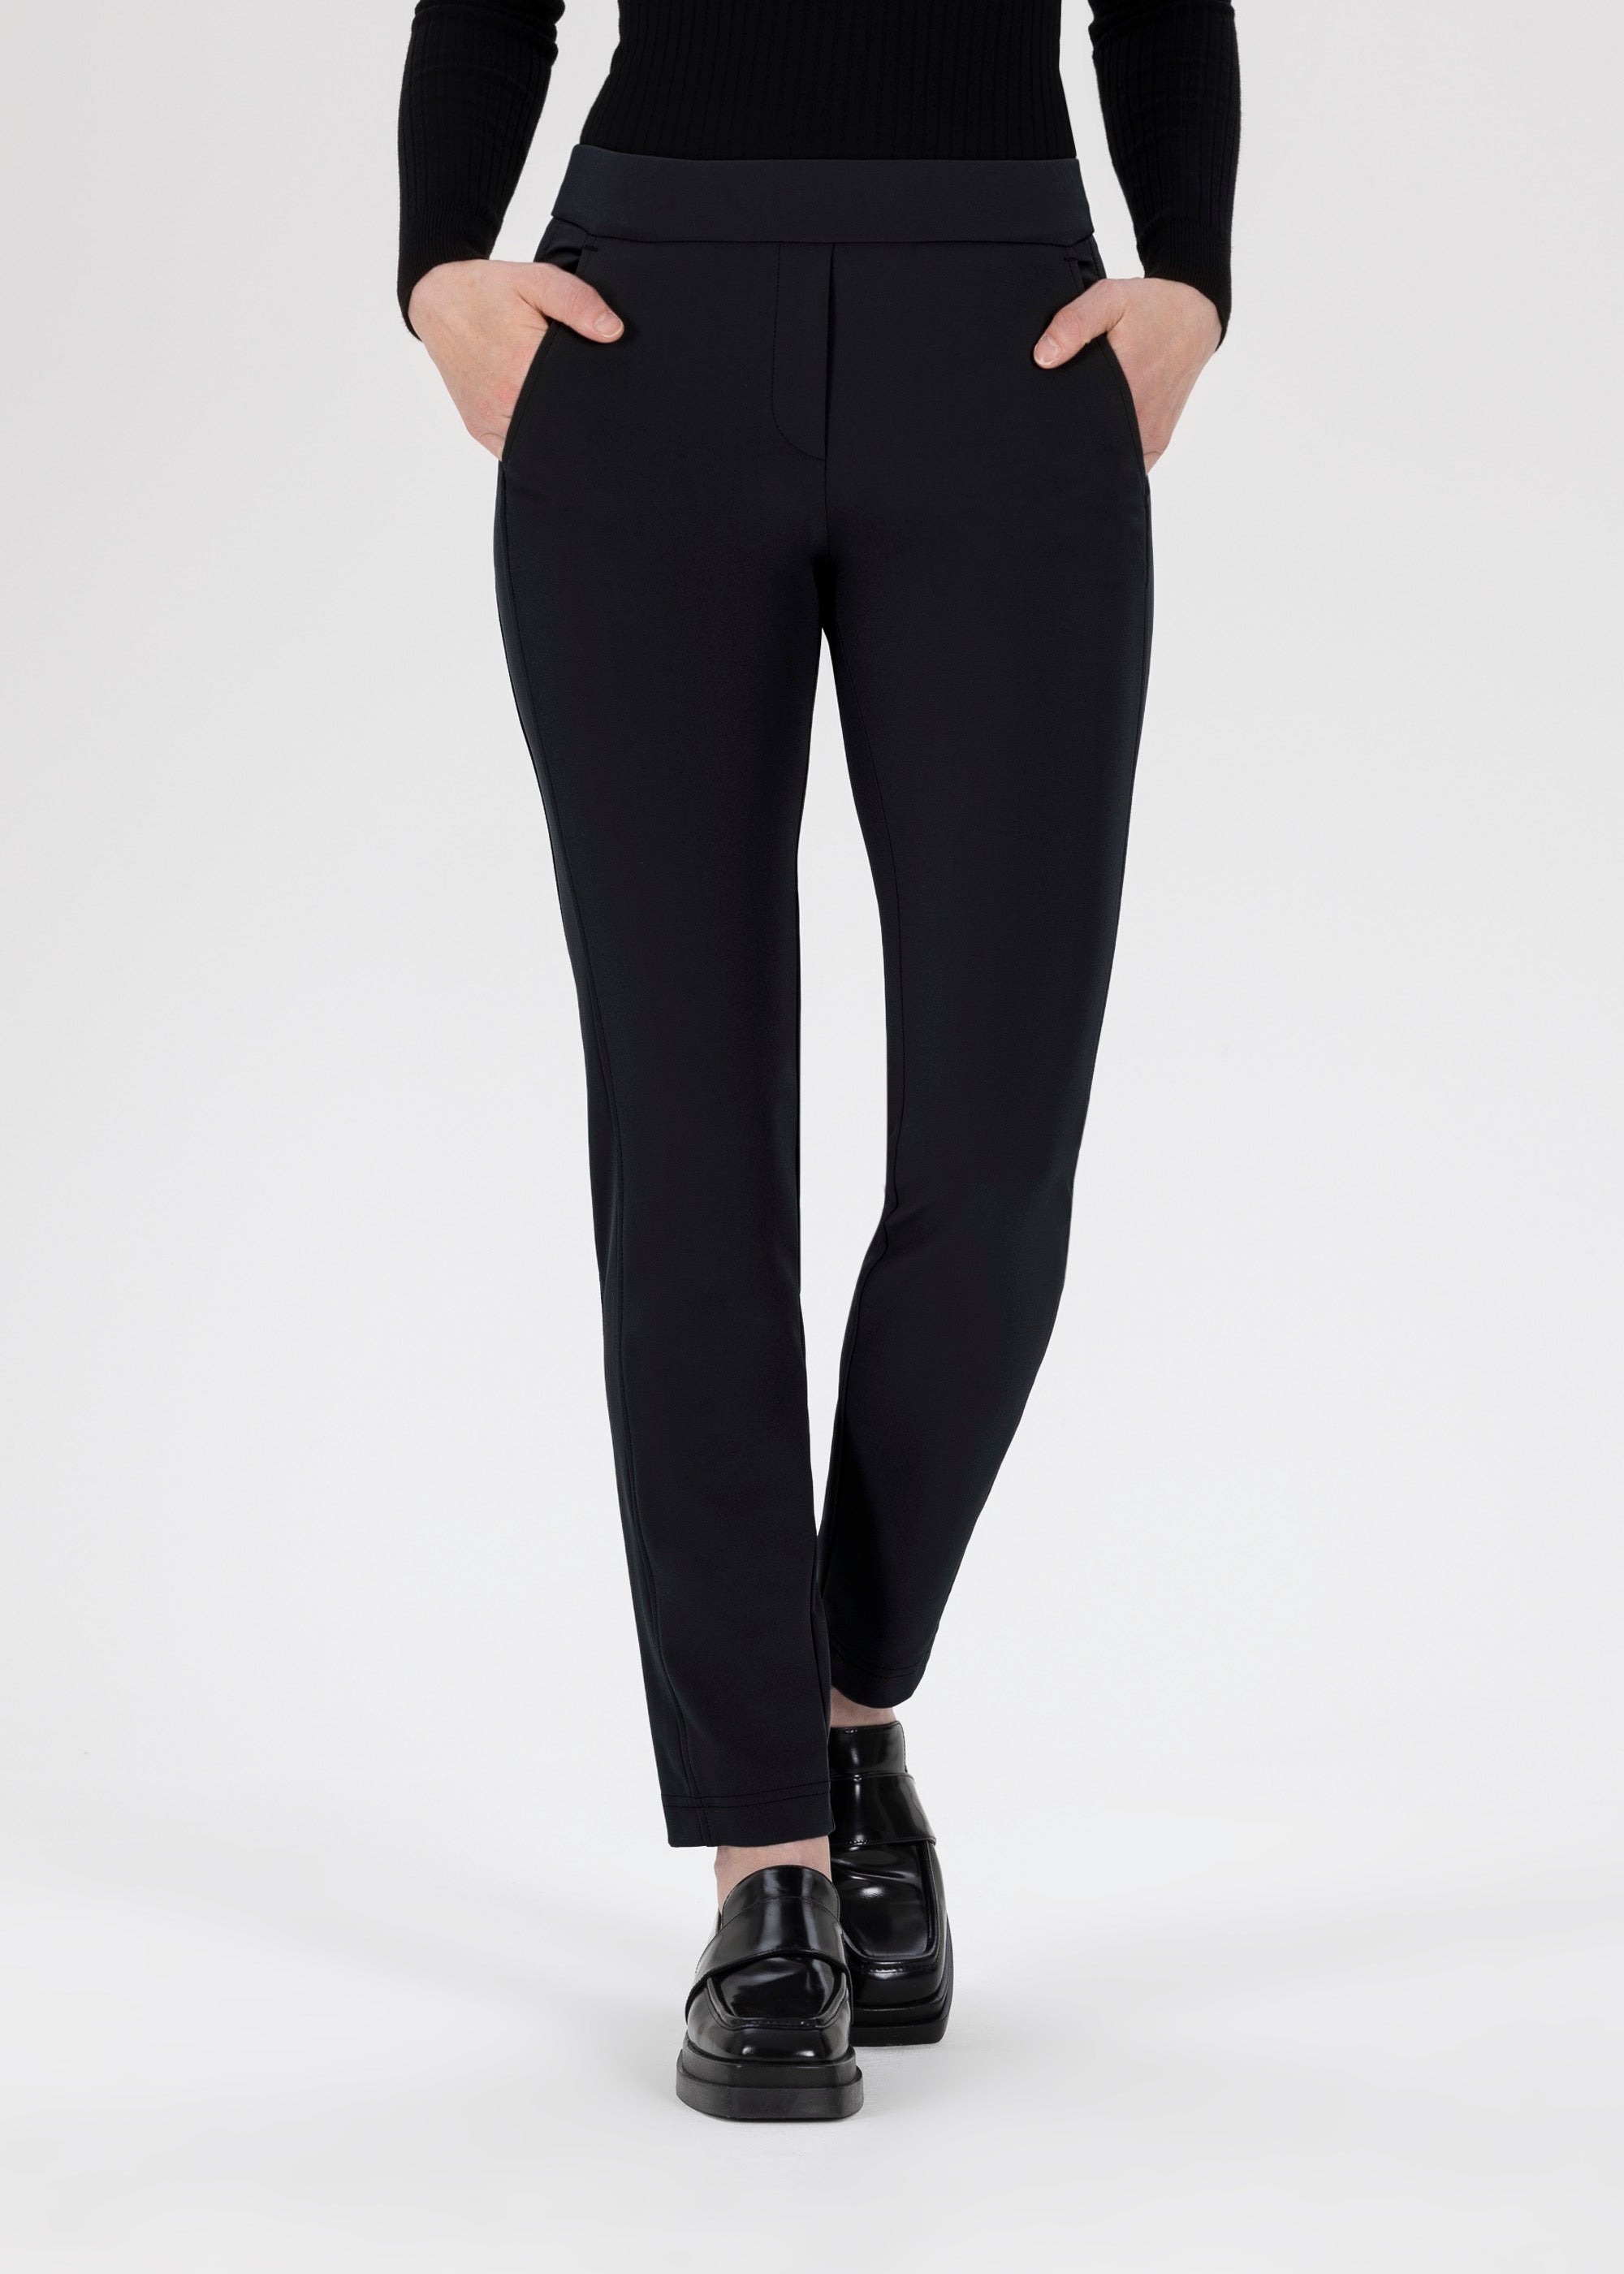 Memel slim trousers in HighTec Bi-Stretch in black